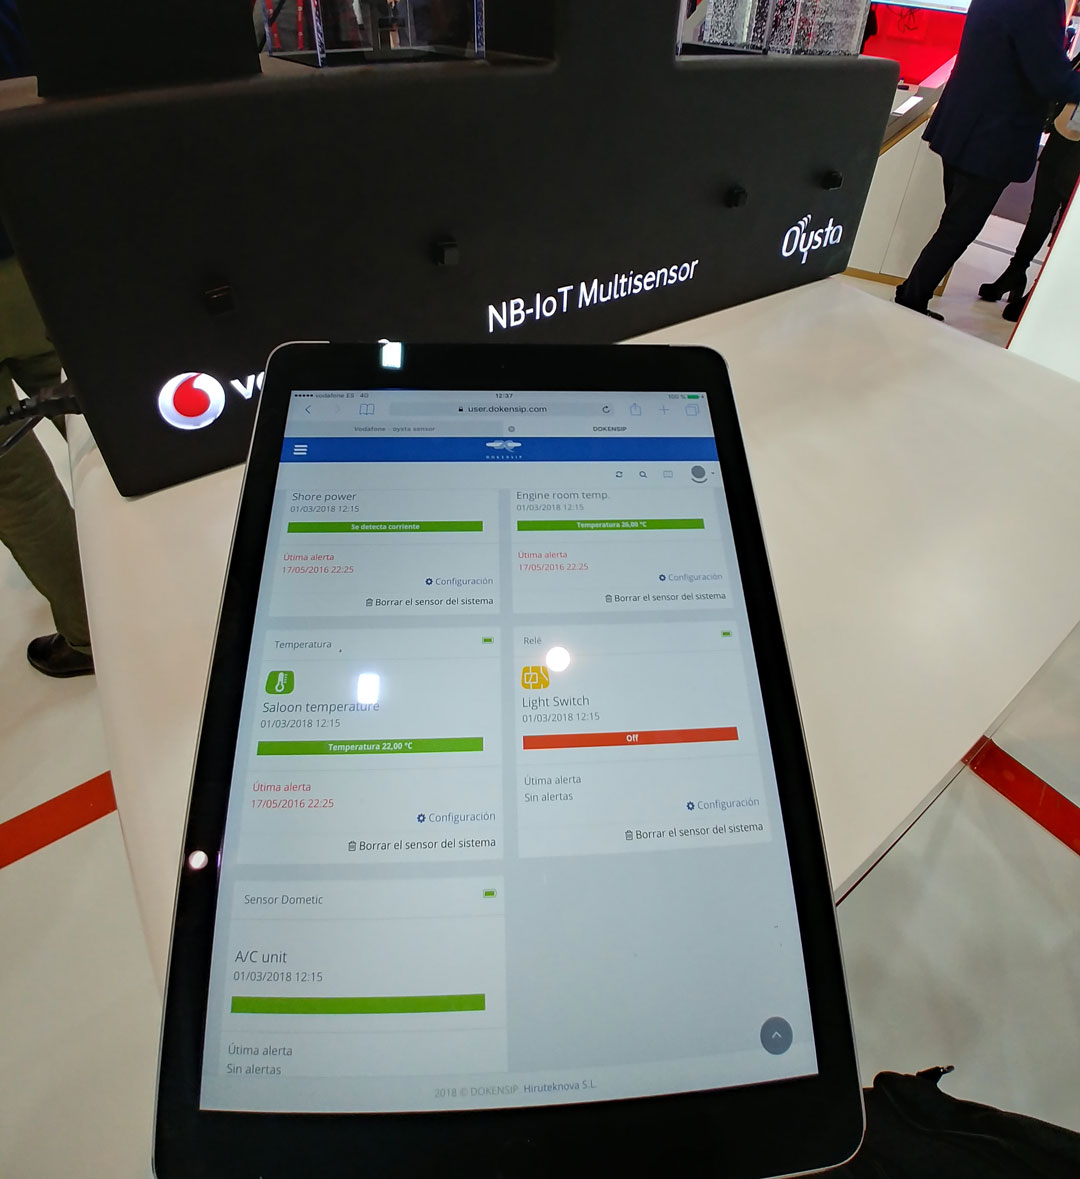 Vodafone presenta en el MWC su apuesta por el NB-IoT